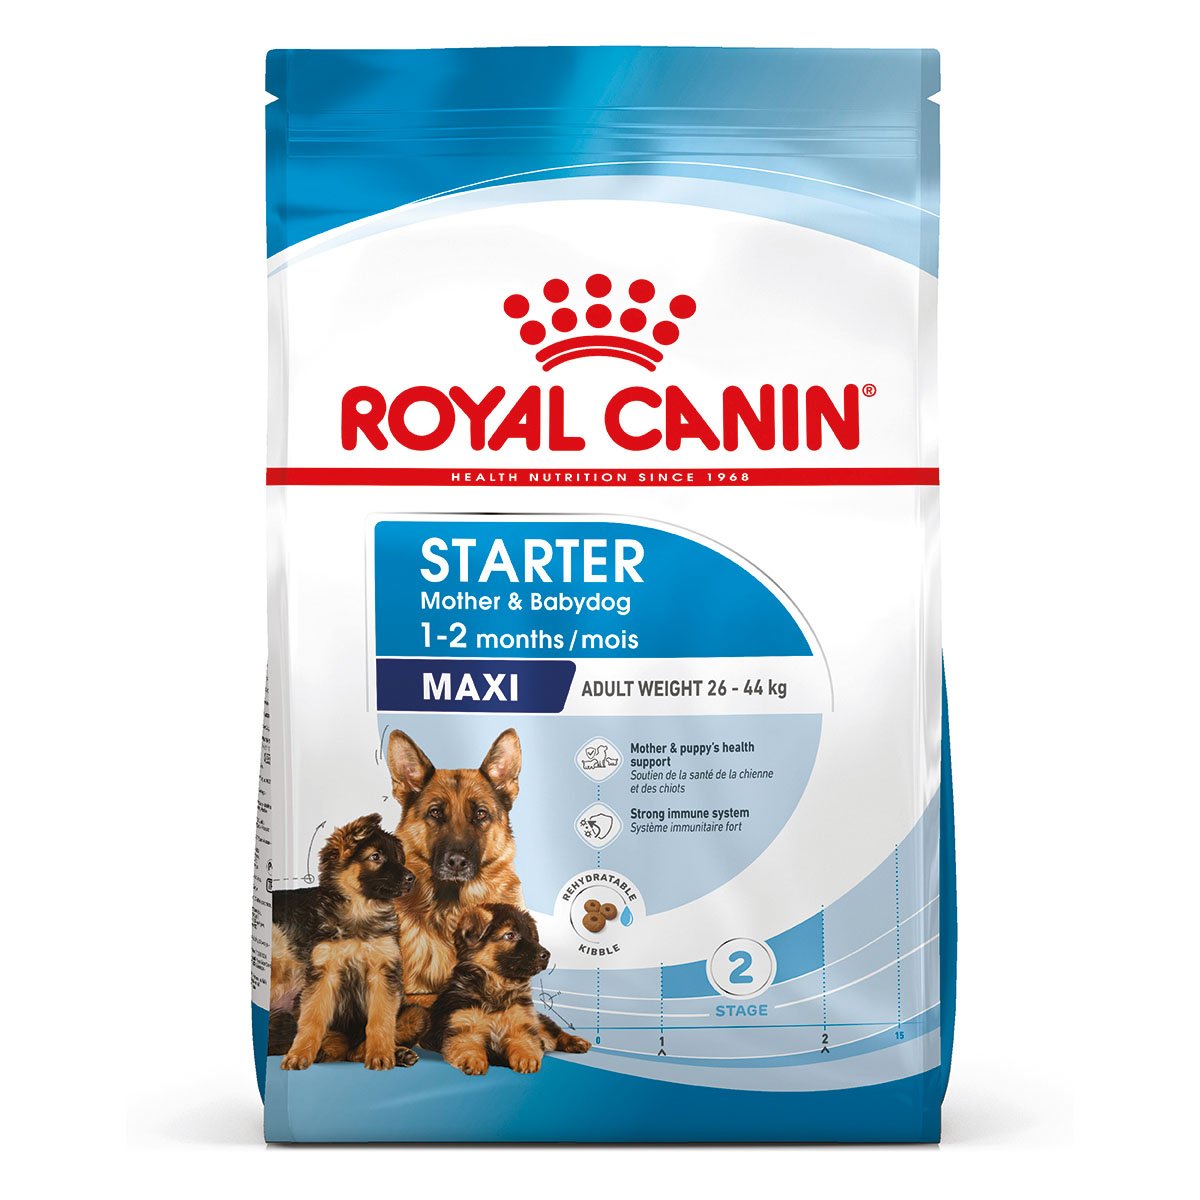 ROYAL CANIN MAXI Starter für tragende Hündin und Welpen großer Rassen 15kg von Royal Canin